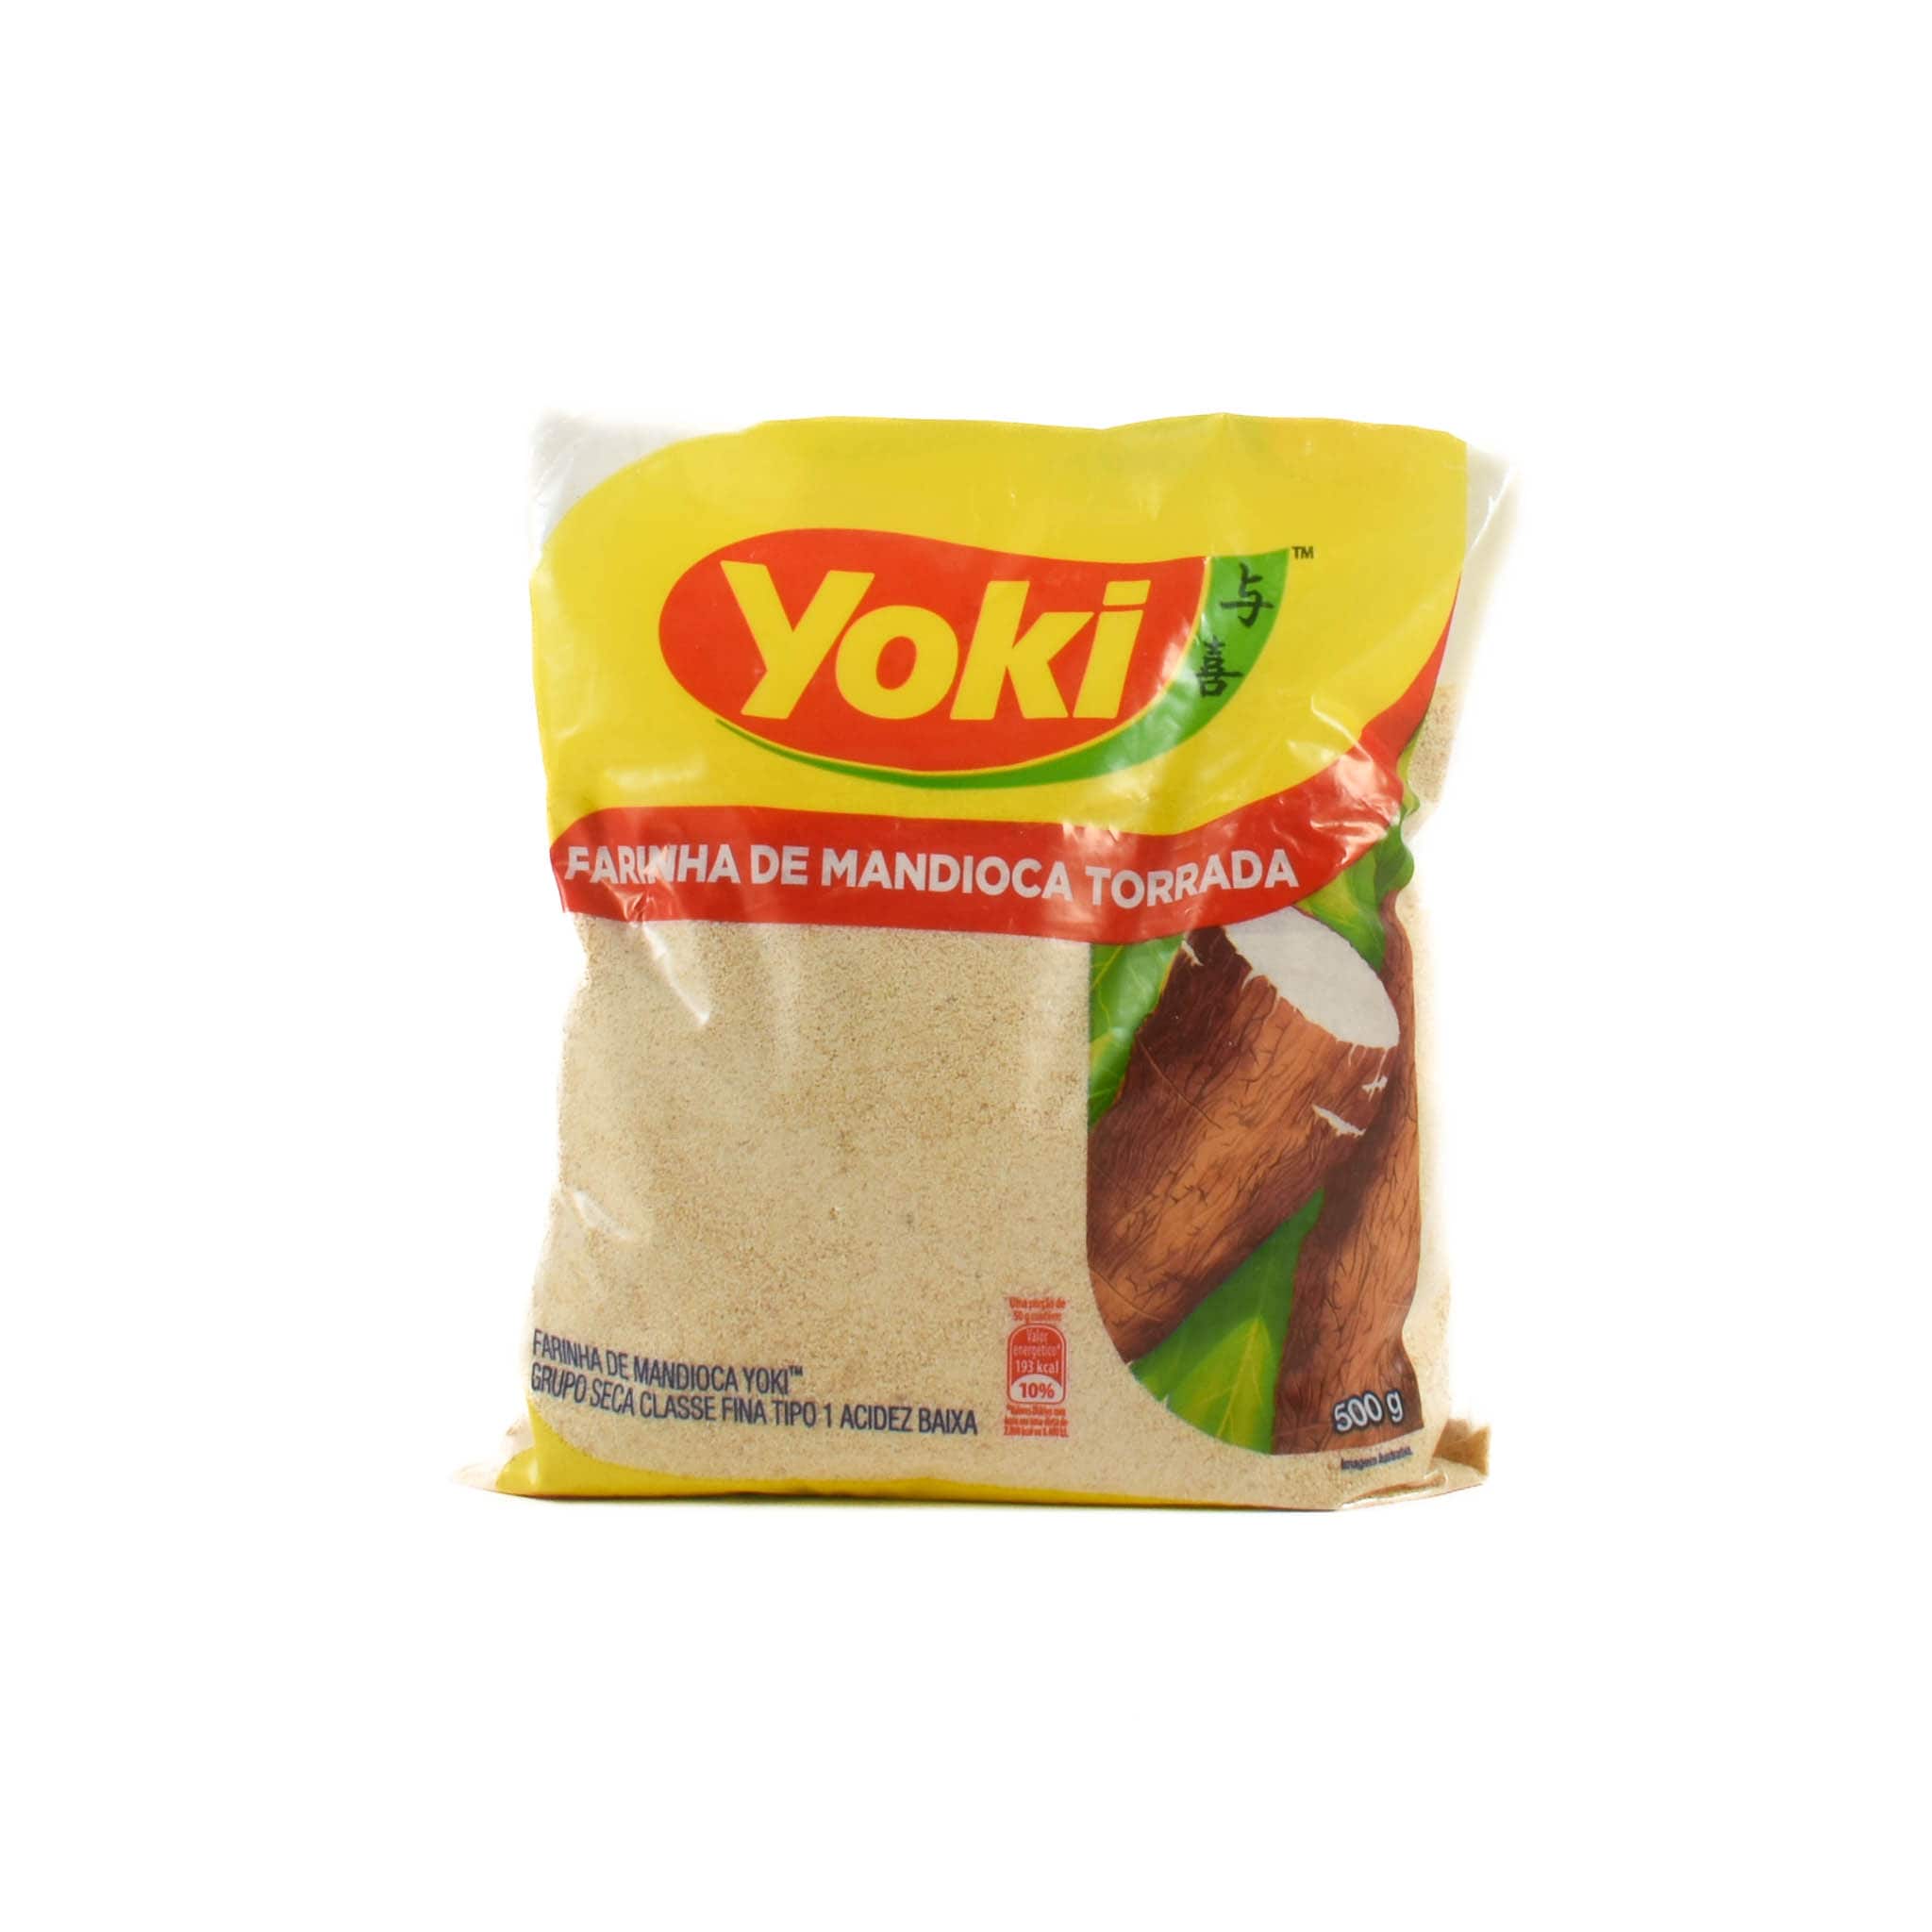 Yoki Farinha Mandioca Torrada, Toasted Cassava Flour 500g